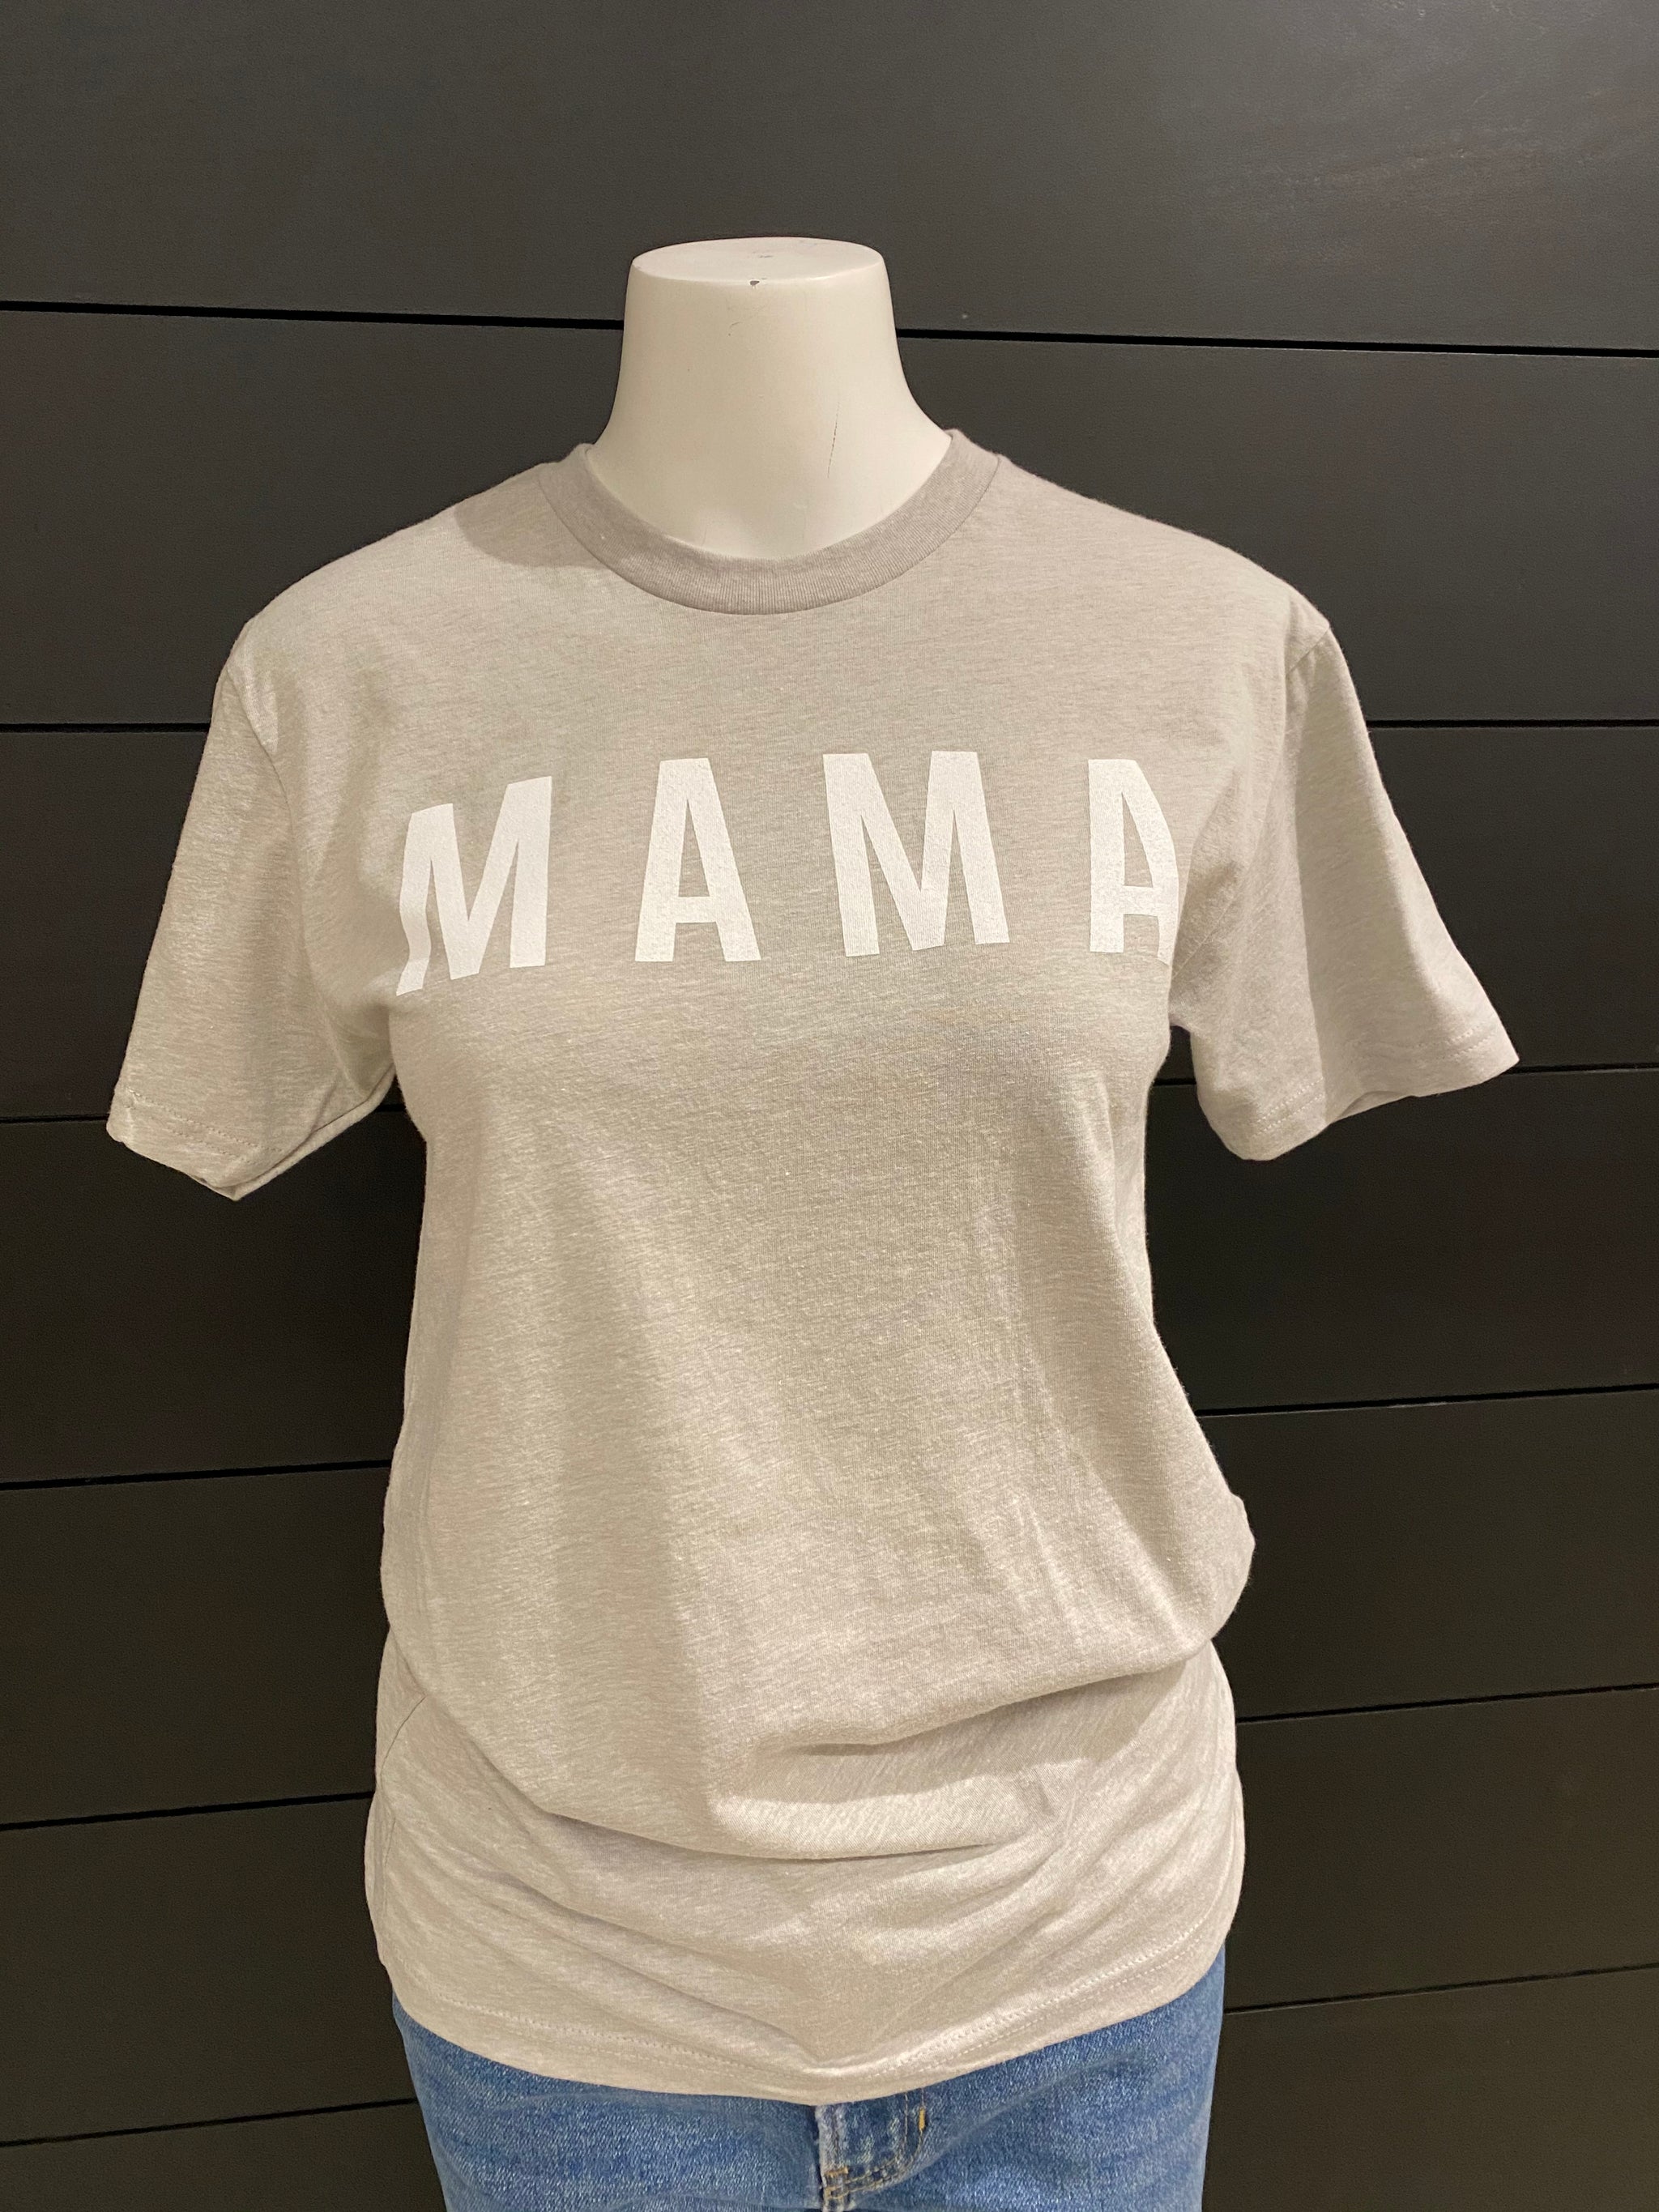 Mama Graphic T-shirt